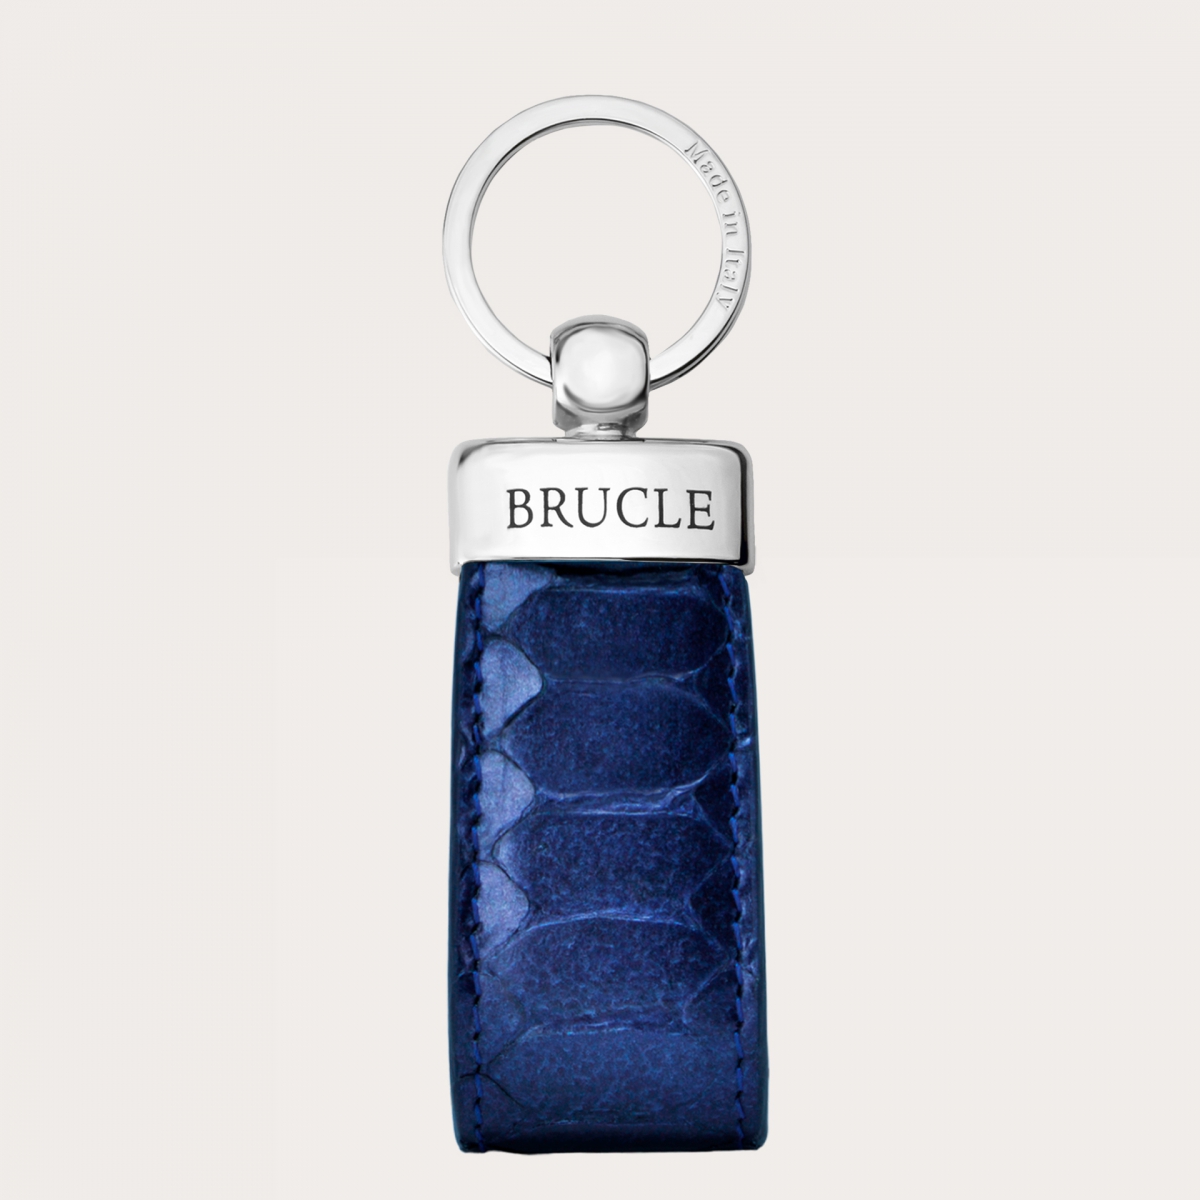 BRUCLE Llavero refinado en piel de pitón, azul metalizado